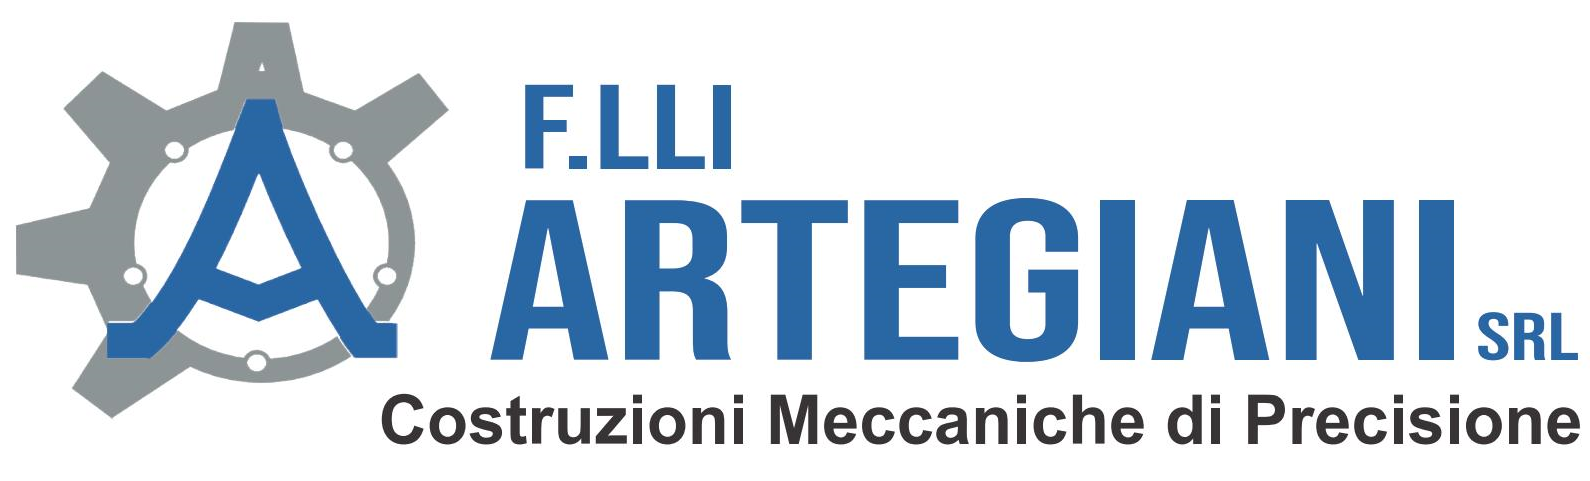 Introduzione-F.lli Artegiani